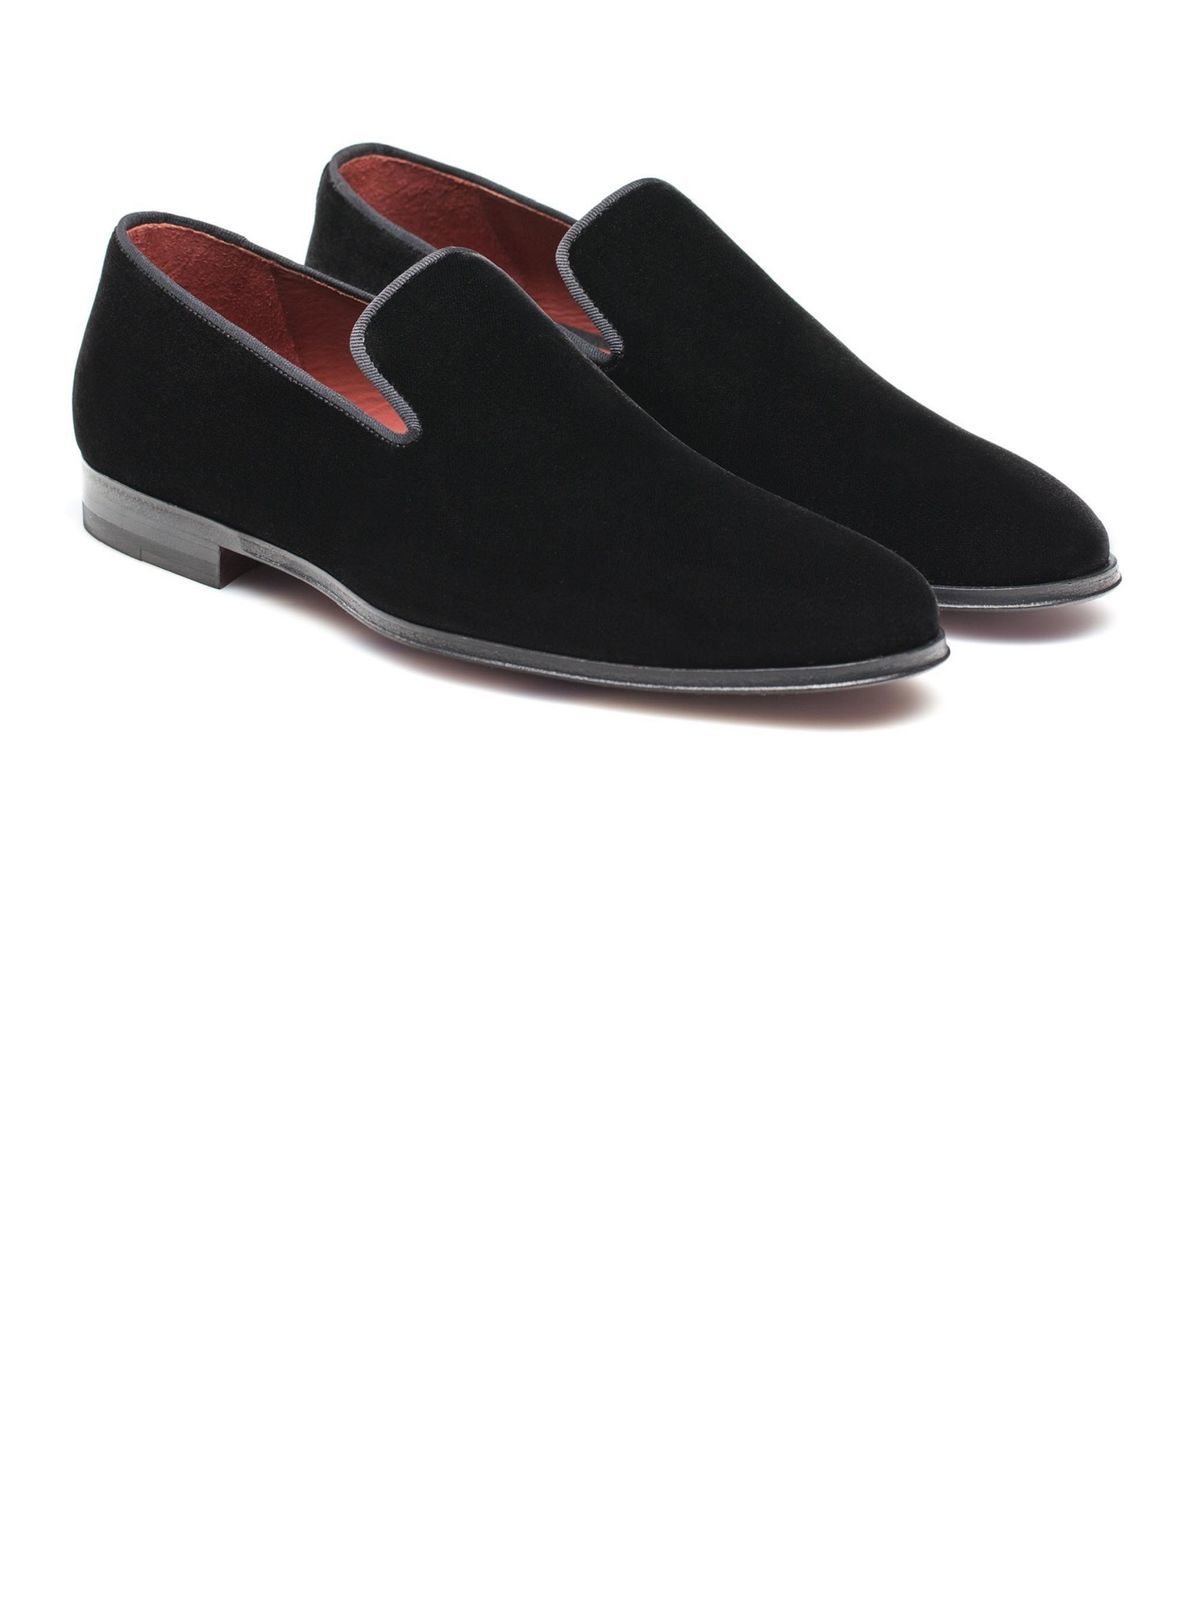 Buy Mens 7153-37 Formal Slippers online | Looksgud.in